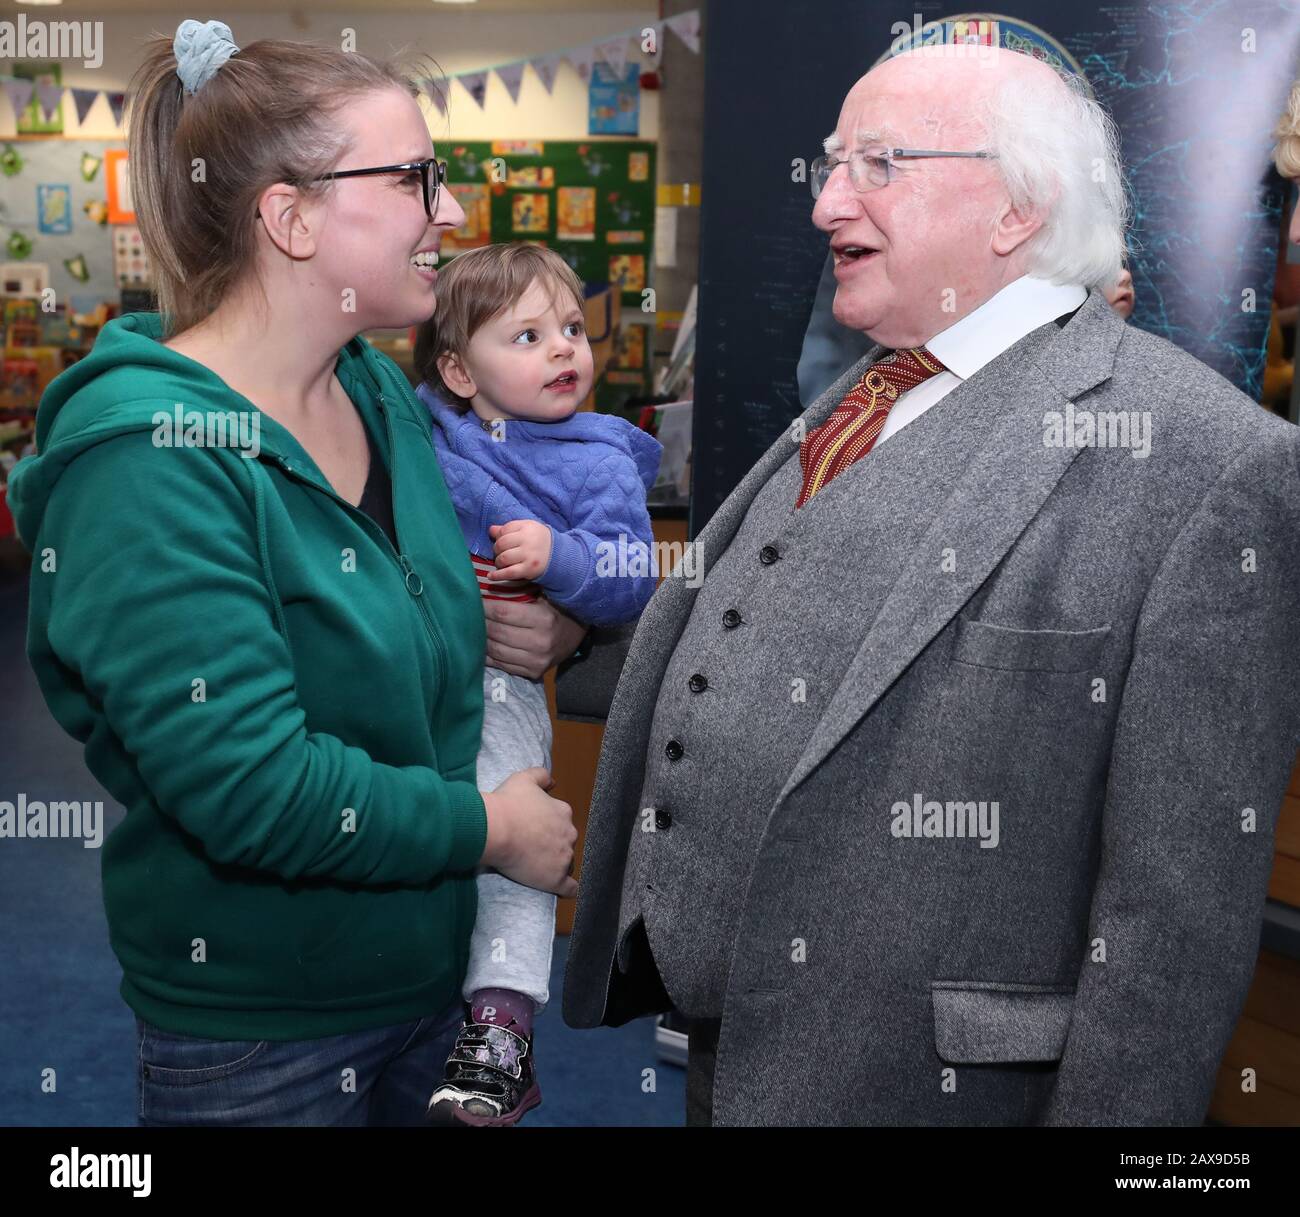 Präsident Michael D Higgins trifft Adrienne Lynch und ihre Tochter Terri in der Cabra Library in Dublin, nachdem er einen Teil seiner persönlichen Buchsammlung an Dublin City Libraries gespendet hat. Stockfoto